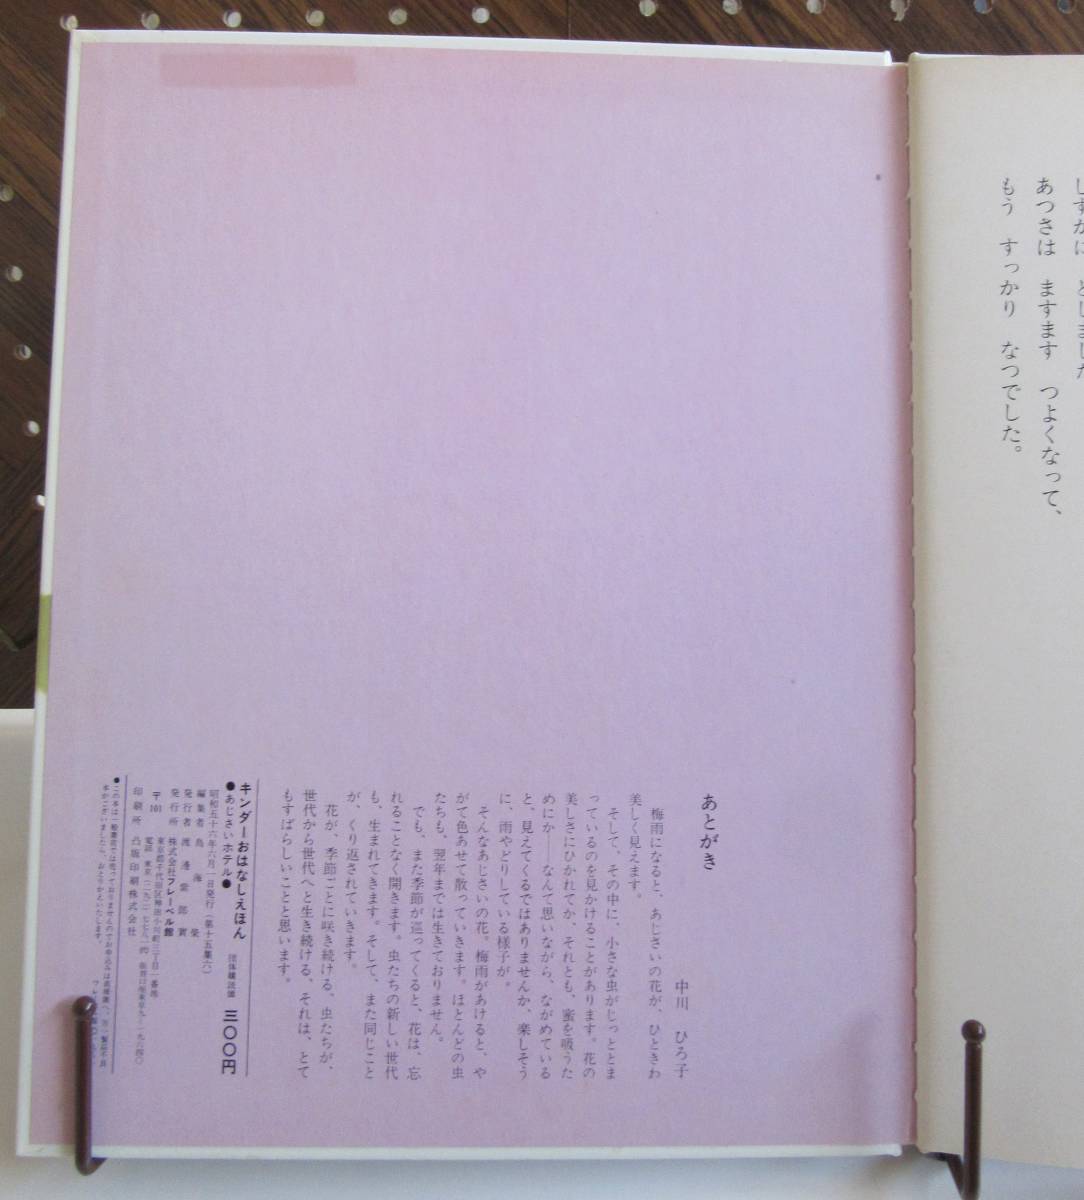 a... отель [.].. весна плата [ документ ] средний река Hiroko f этикетка павильон gold da-.. нет ... Showa 56 год 6 месяц 1 день выпуск Showa Retro 